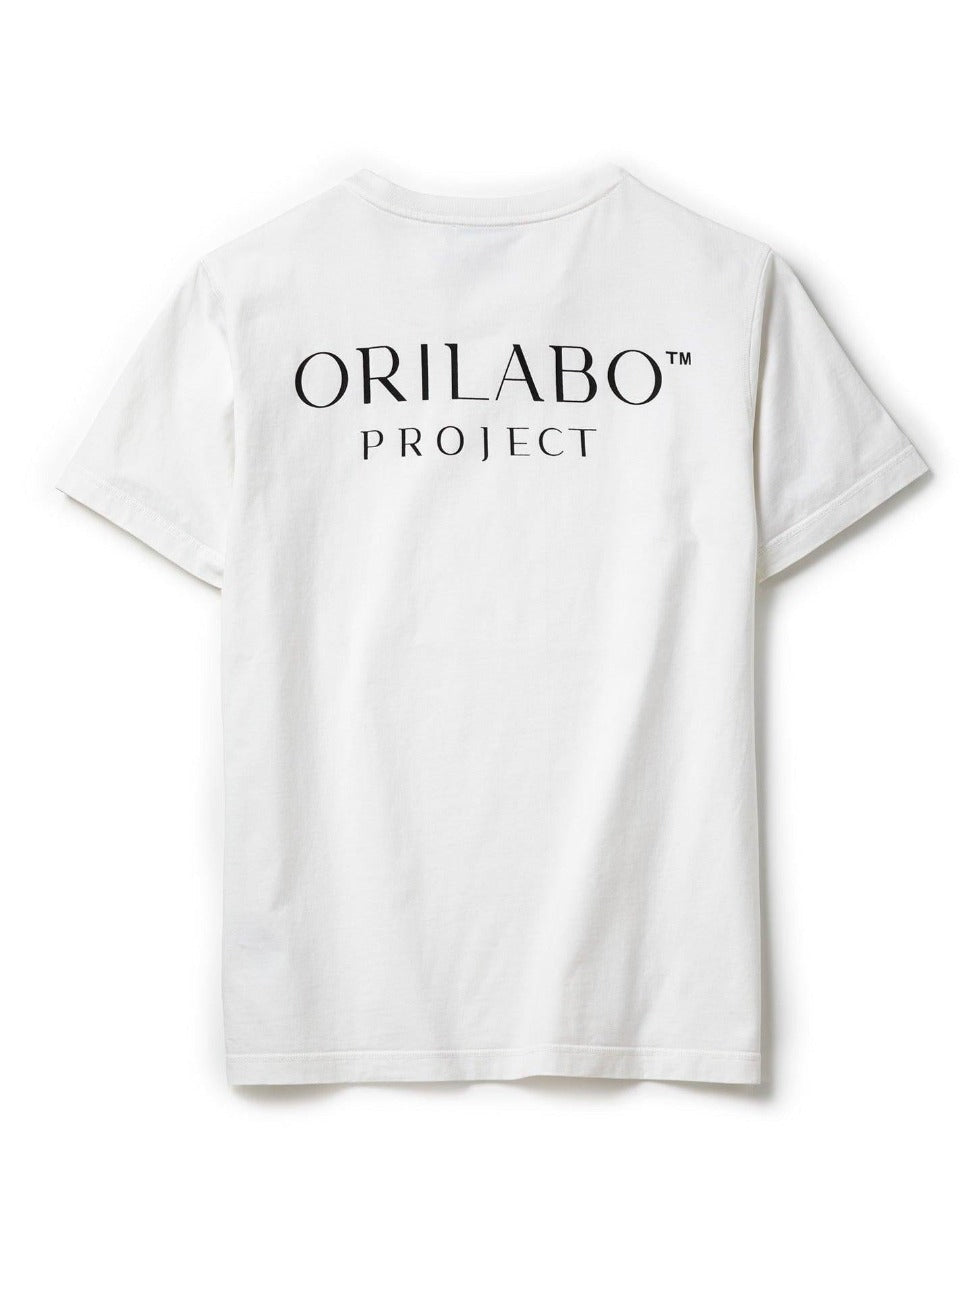 Men's ORILABO Big Logo Short Sleeve T-shirt - White - ORILABO Project